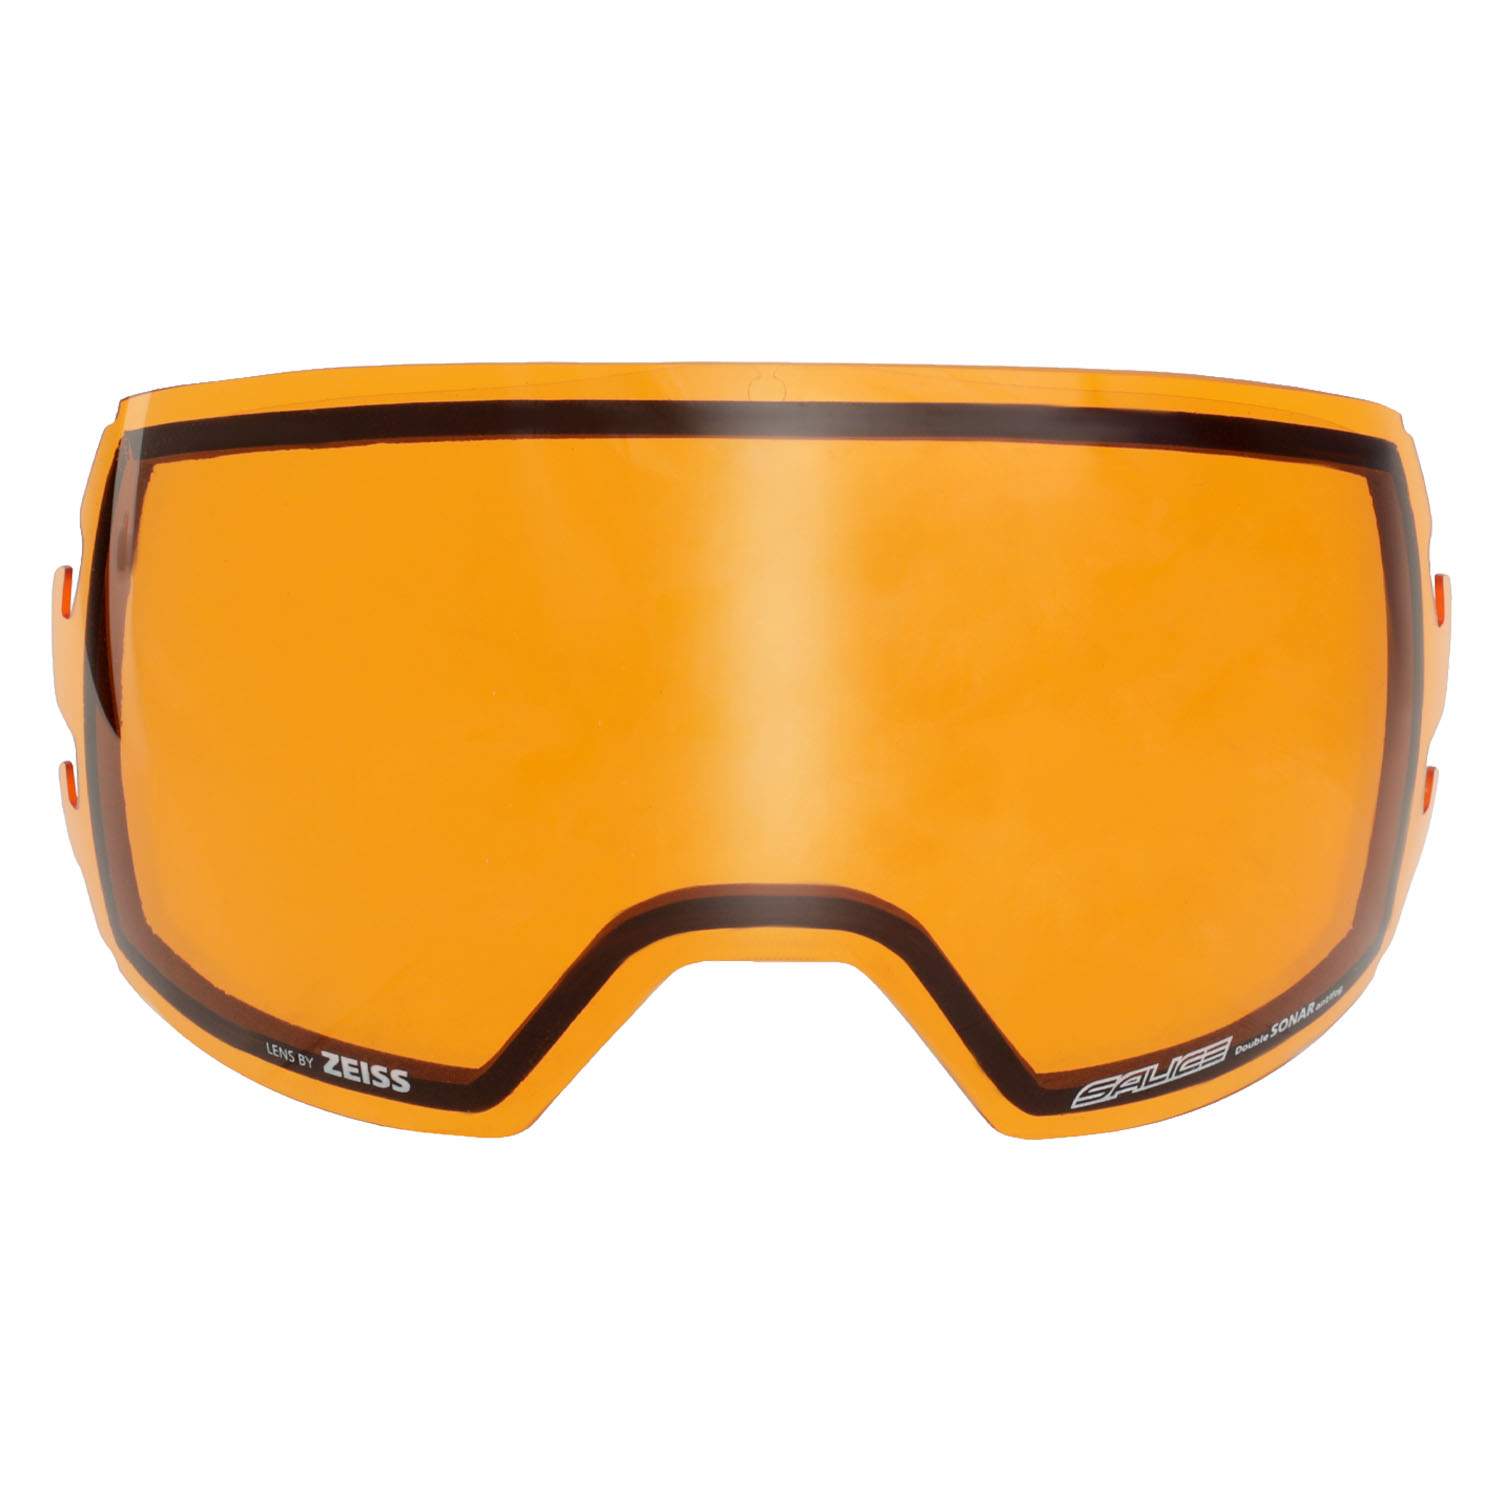 Очки горнолыжные Salice 605DARWF Orange/Rw Black S3, S2